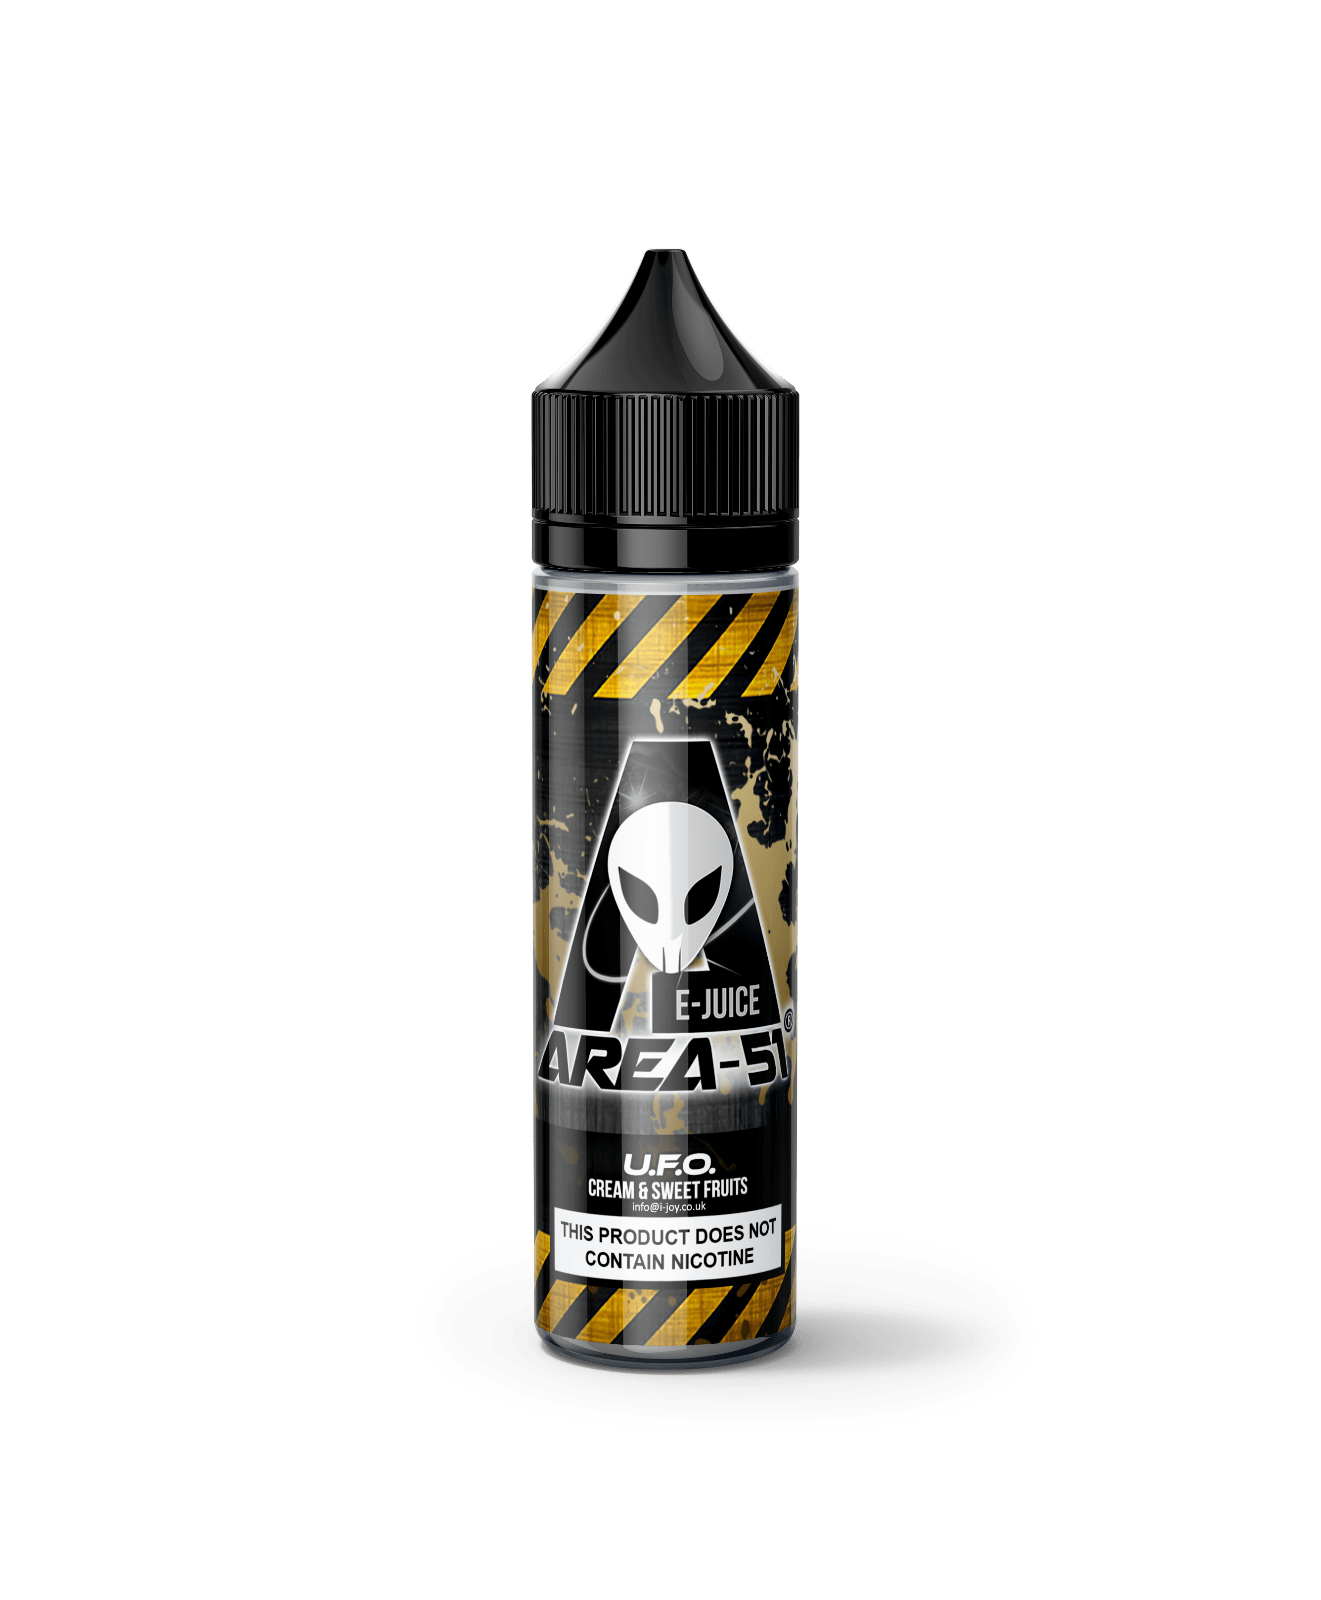 Area 51 UFO 50ml Juice or E-Liquid